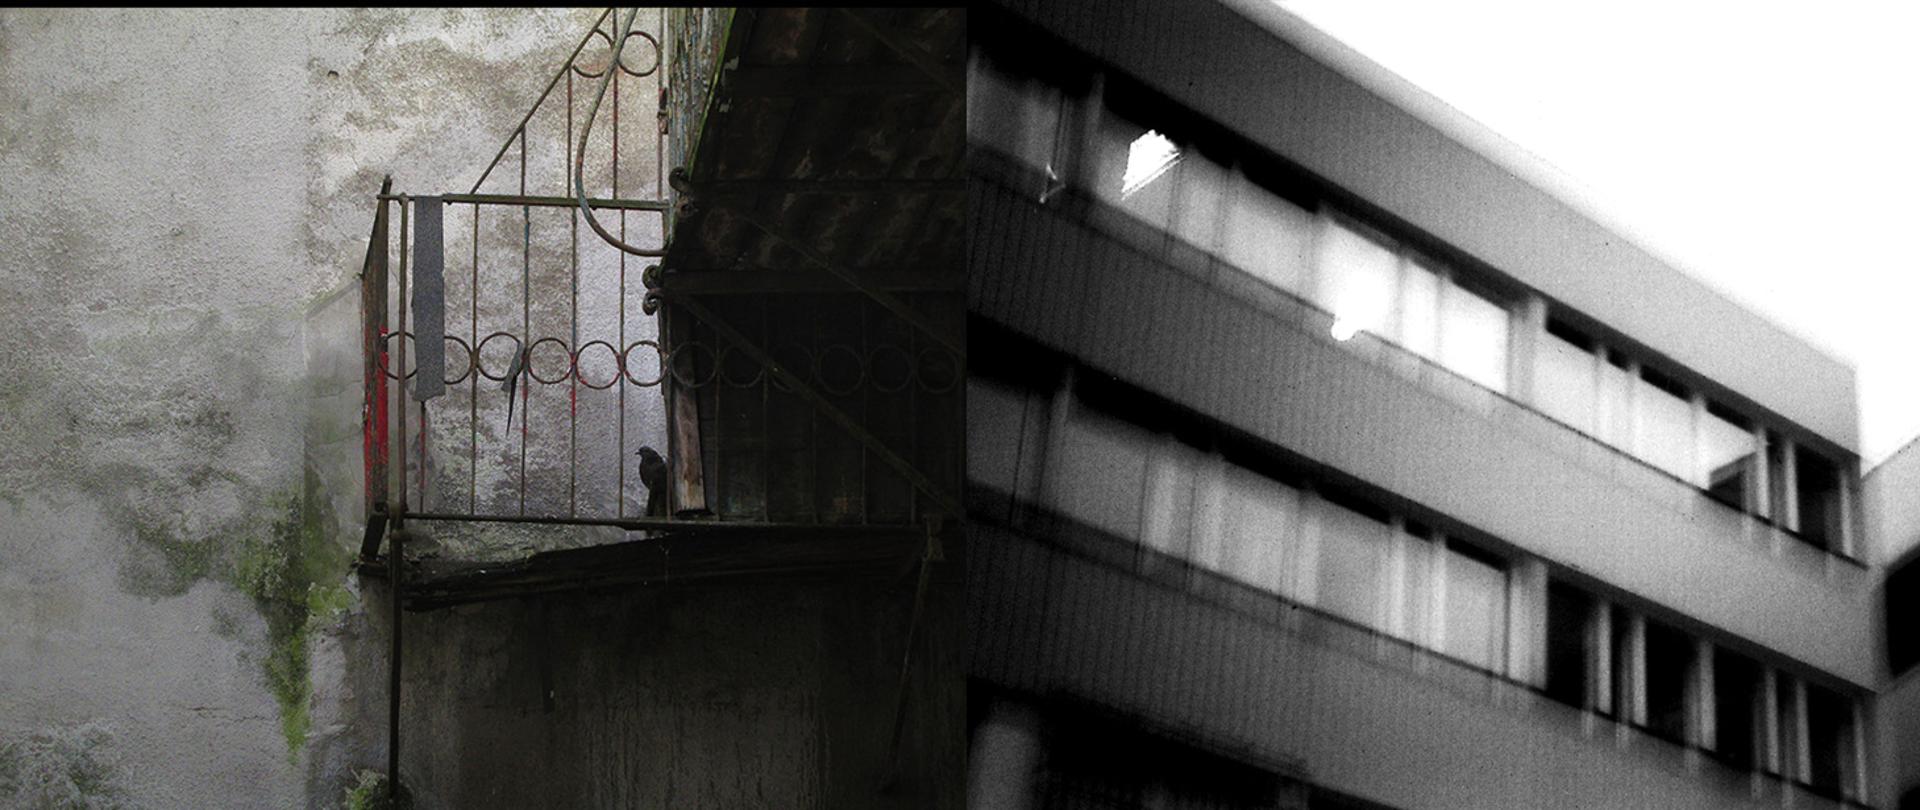 Zdjęcia starej fasady i balkonu przechodzące w rozmazane zdjęcie bloku